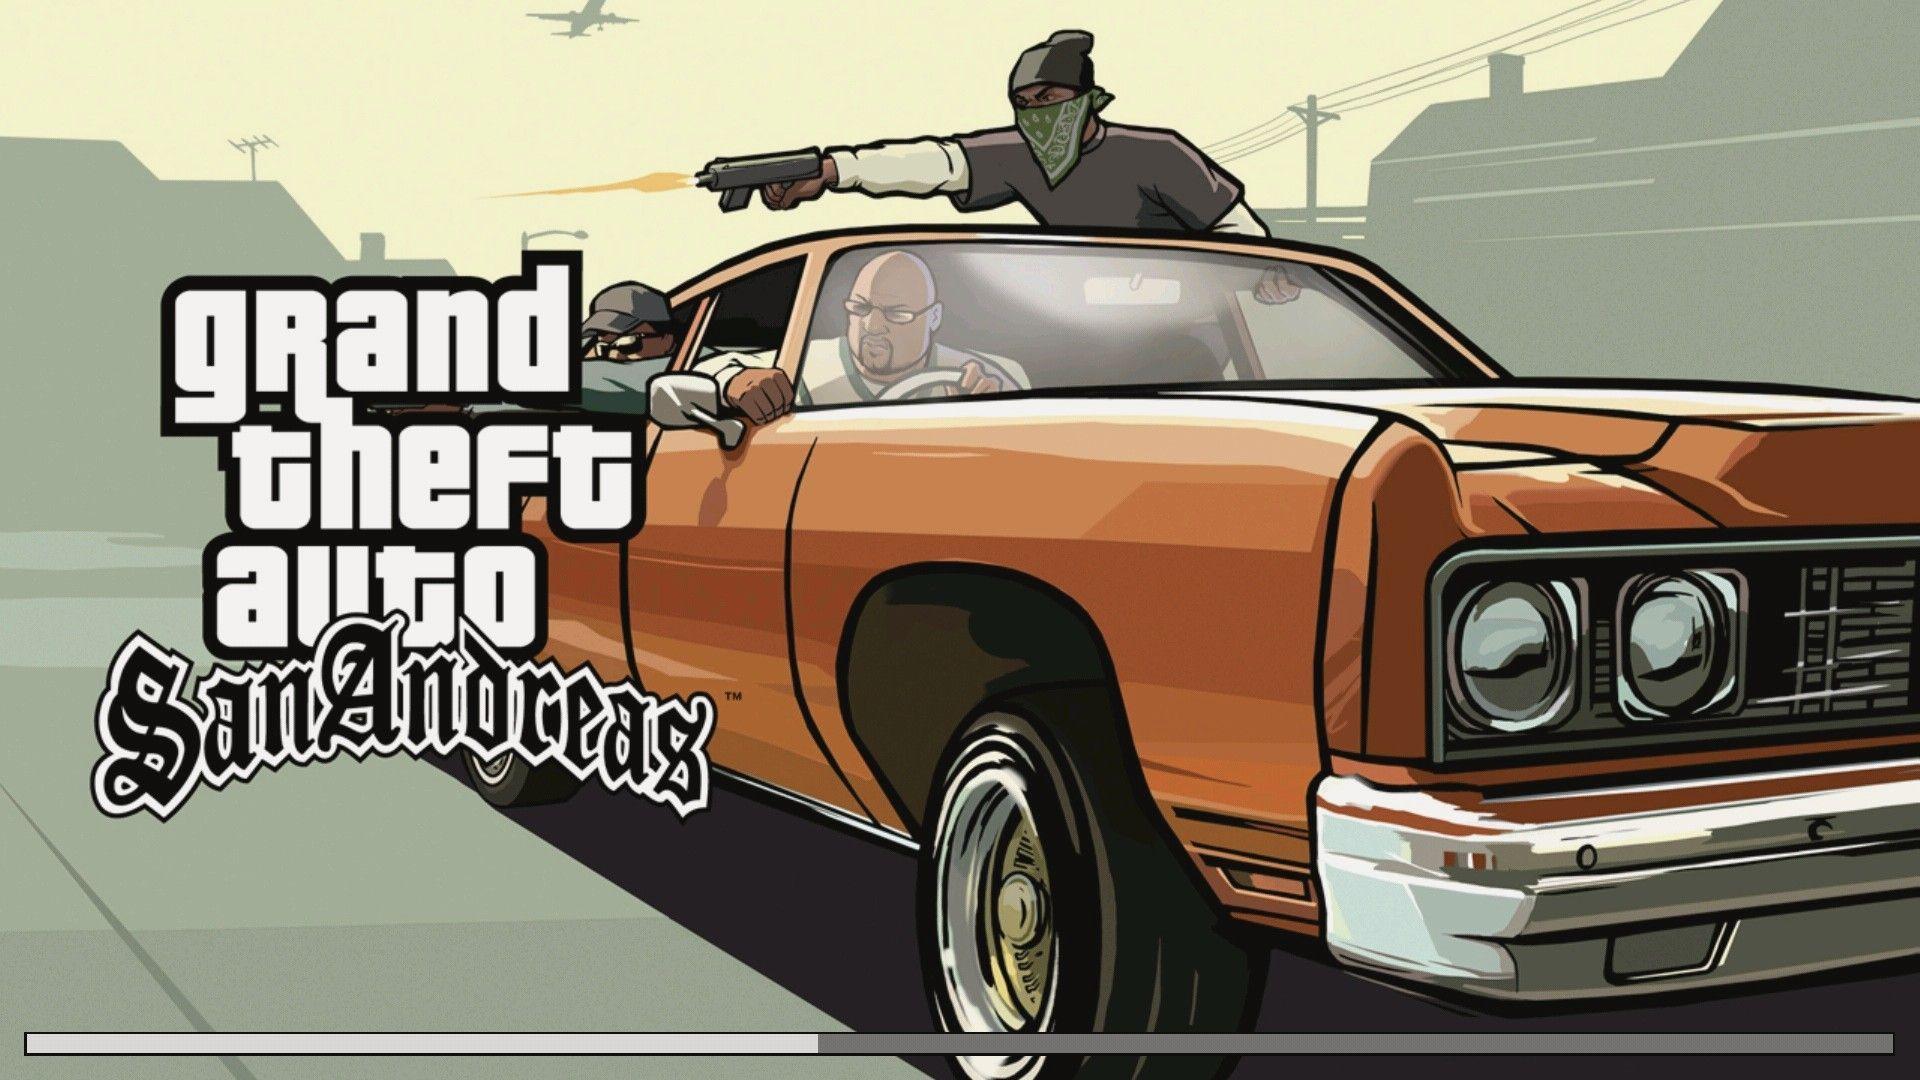 Grand Theft Auto San Andreas Wallpaper HD Download. Wallpaper